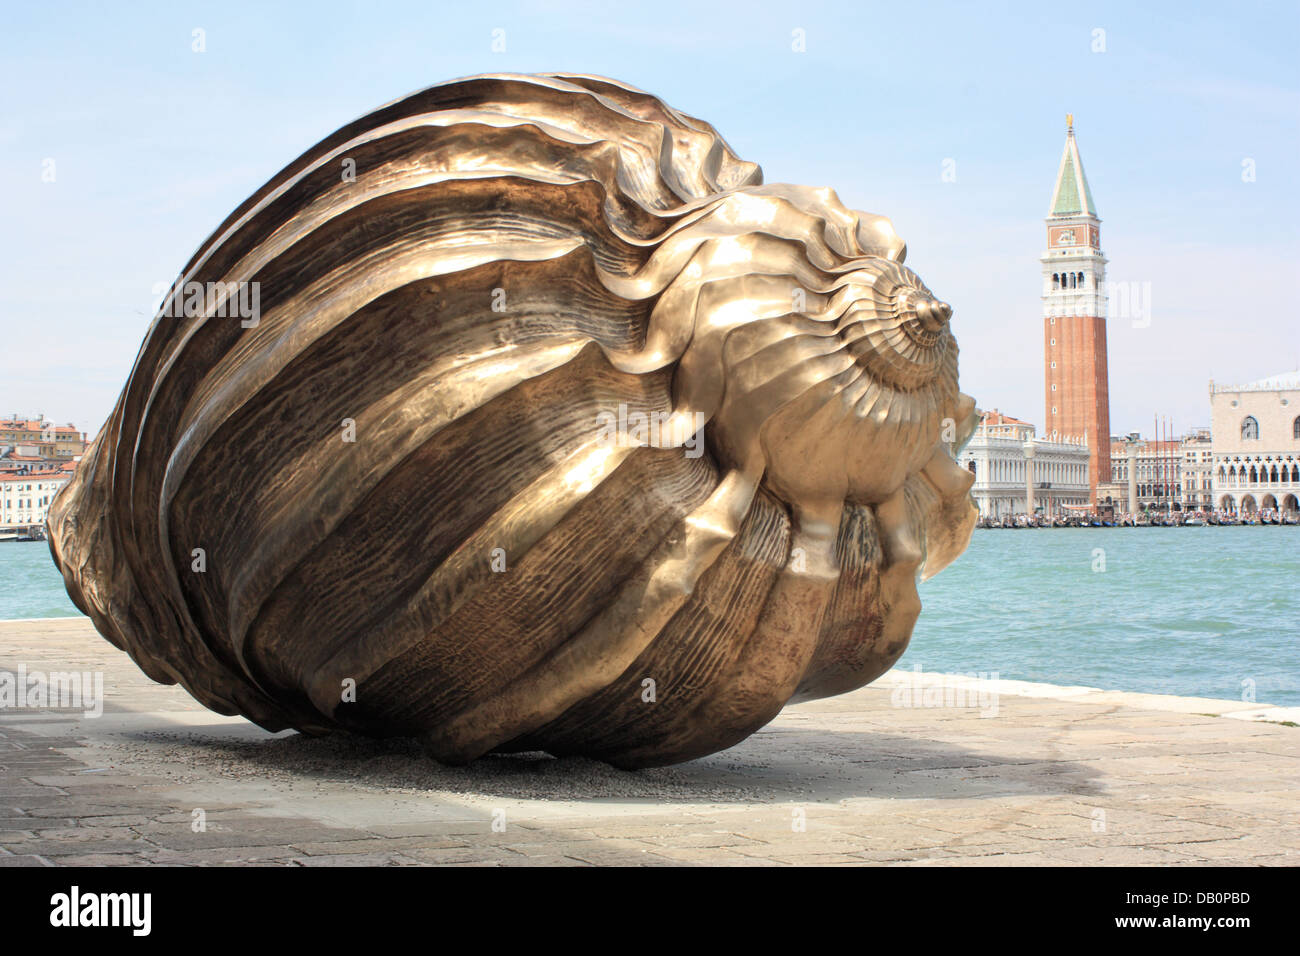 Kunstausstellung La Biennale di Venezia, 2013 - Spirale der Galaxie, ein Bronze seashell Artwork von der britische Künstler Marc Quinn Stockfoto